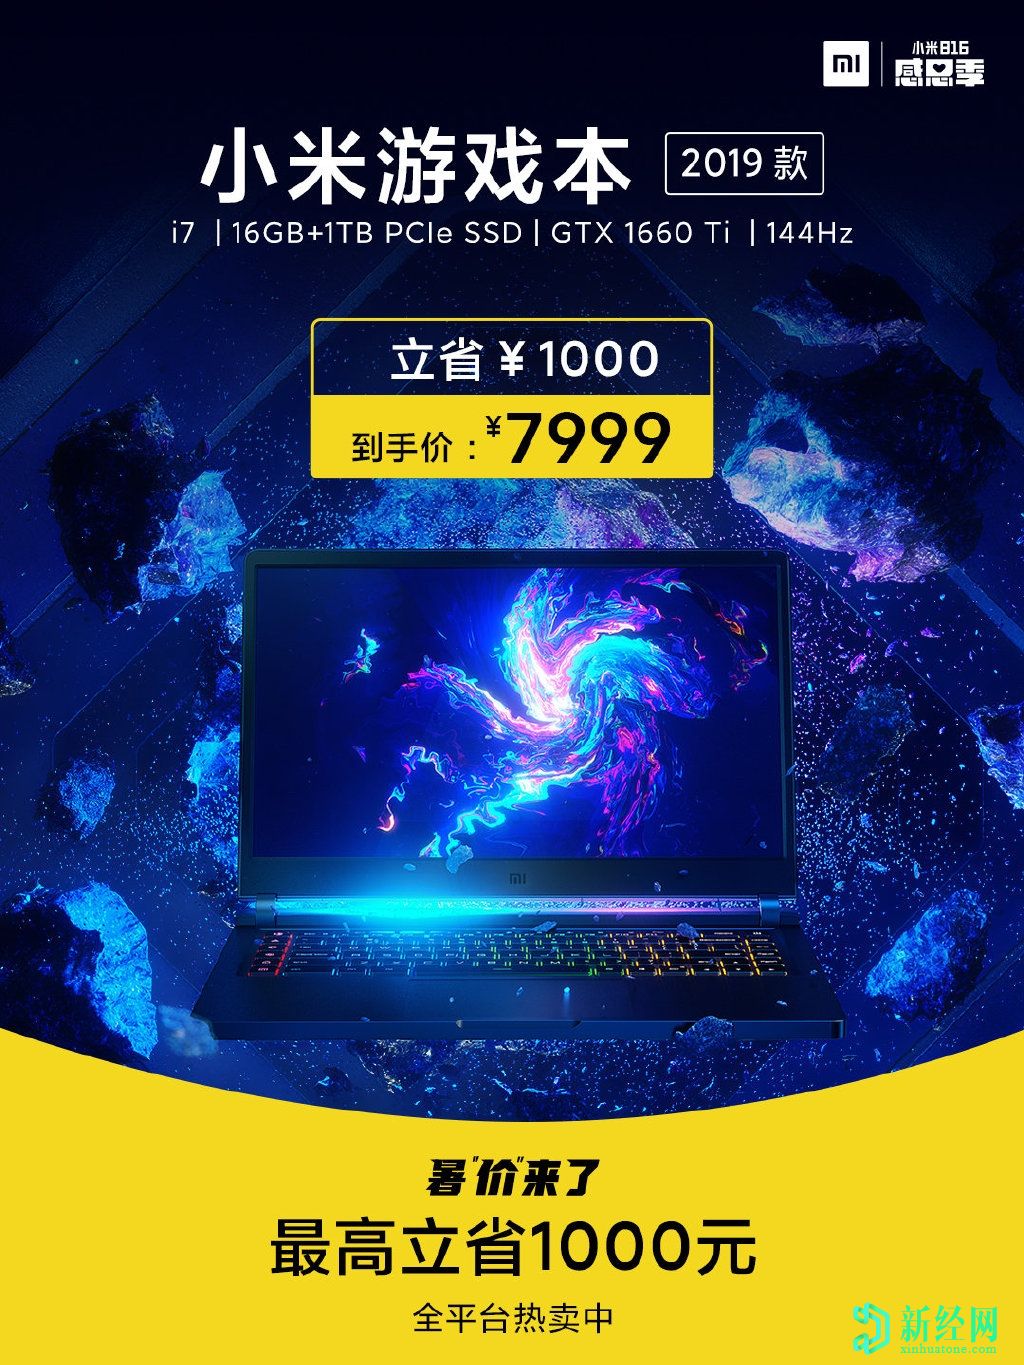 小米Mi游戏笔记本电脑在中国获得1,000元的折扣